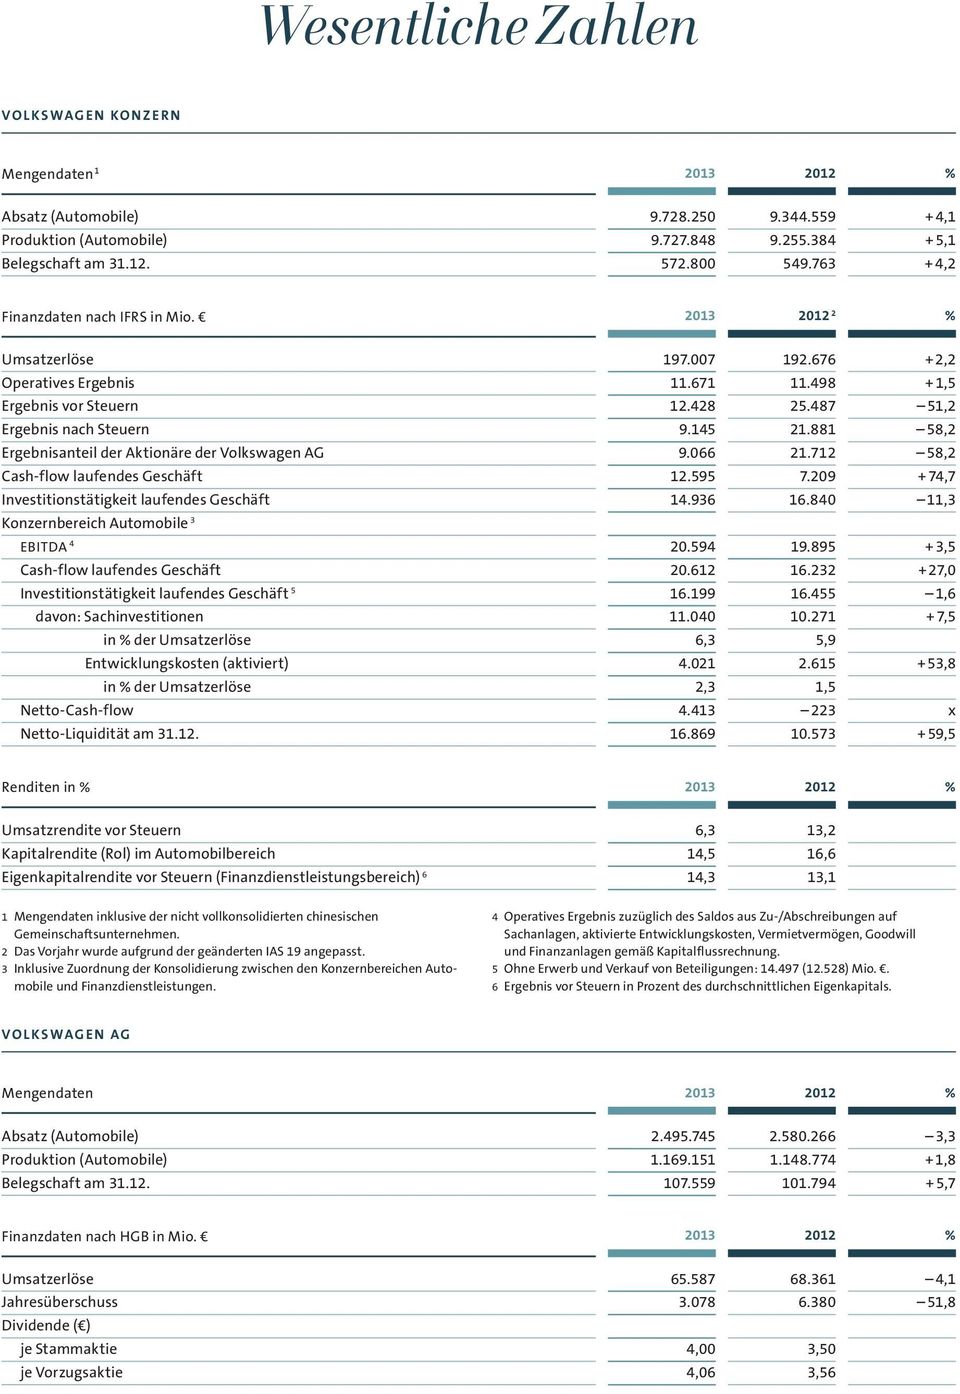 881 58,2 Ergebnisanteil der Aktionäre der Volkswagen AG 9.066 21.712 58,2 Cash-flow laufendes Geschäft 12.595 7.209 + 74,7 Investitionstätigkeit laufendes Geschäft 14.936 16.